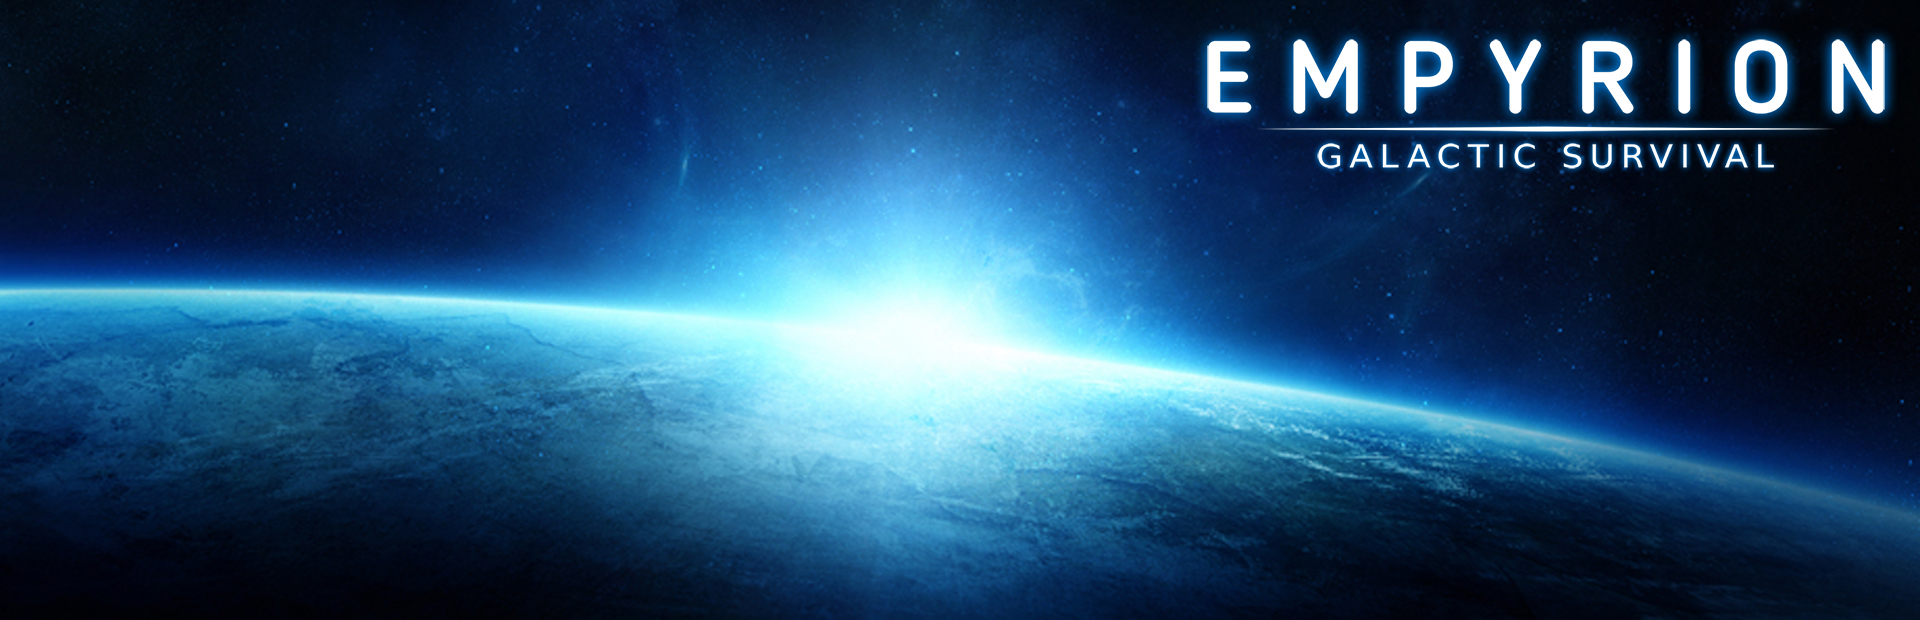 دانلود بازی Empyrion - Galactic Survival برای پی سی | گیمباتو